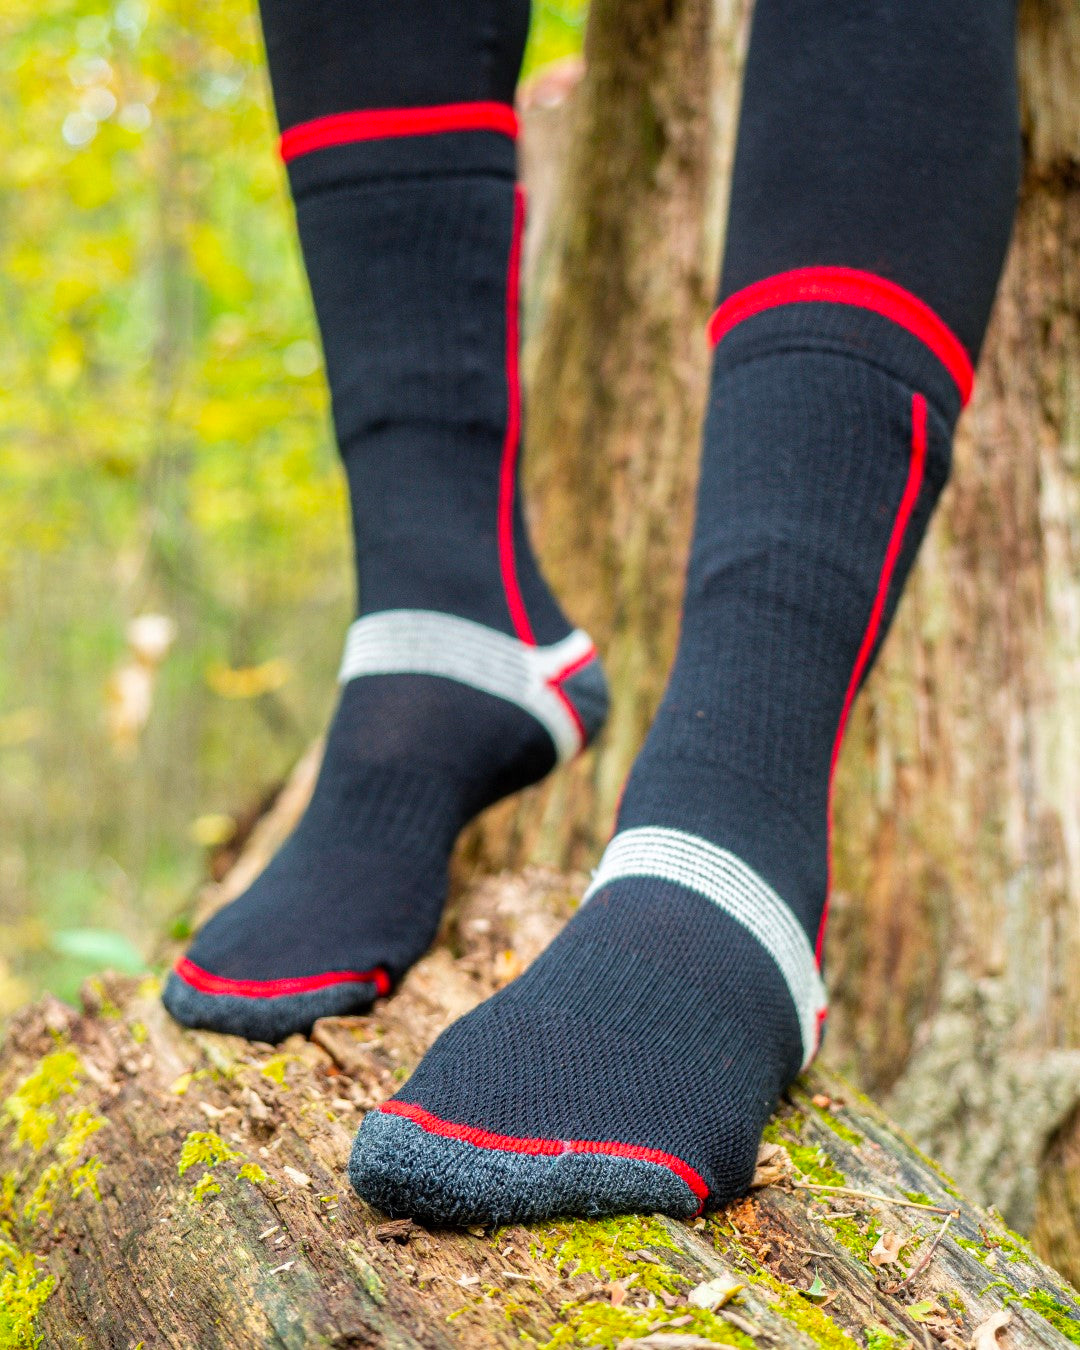 thin merino wool socks for hiking 